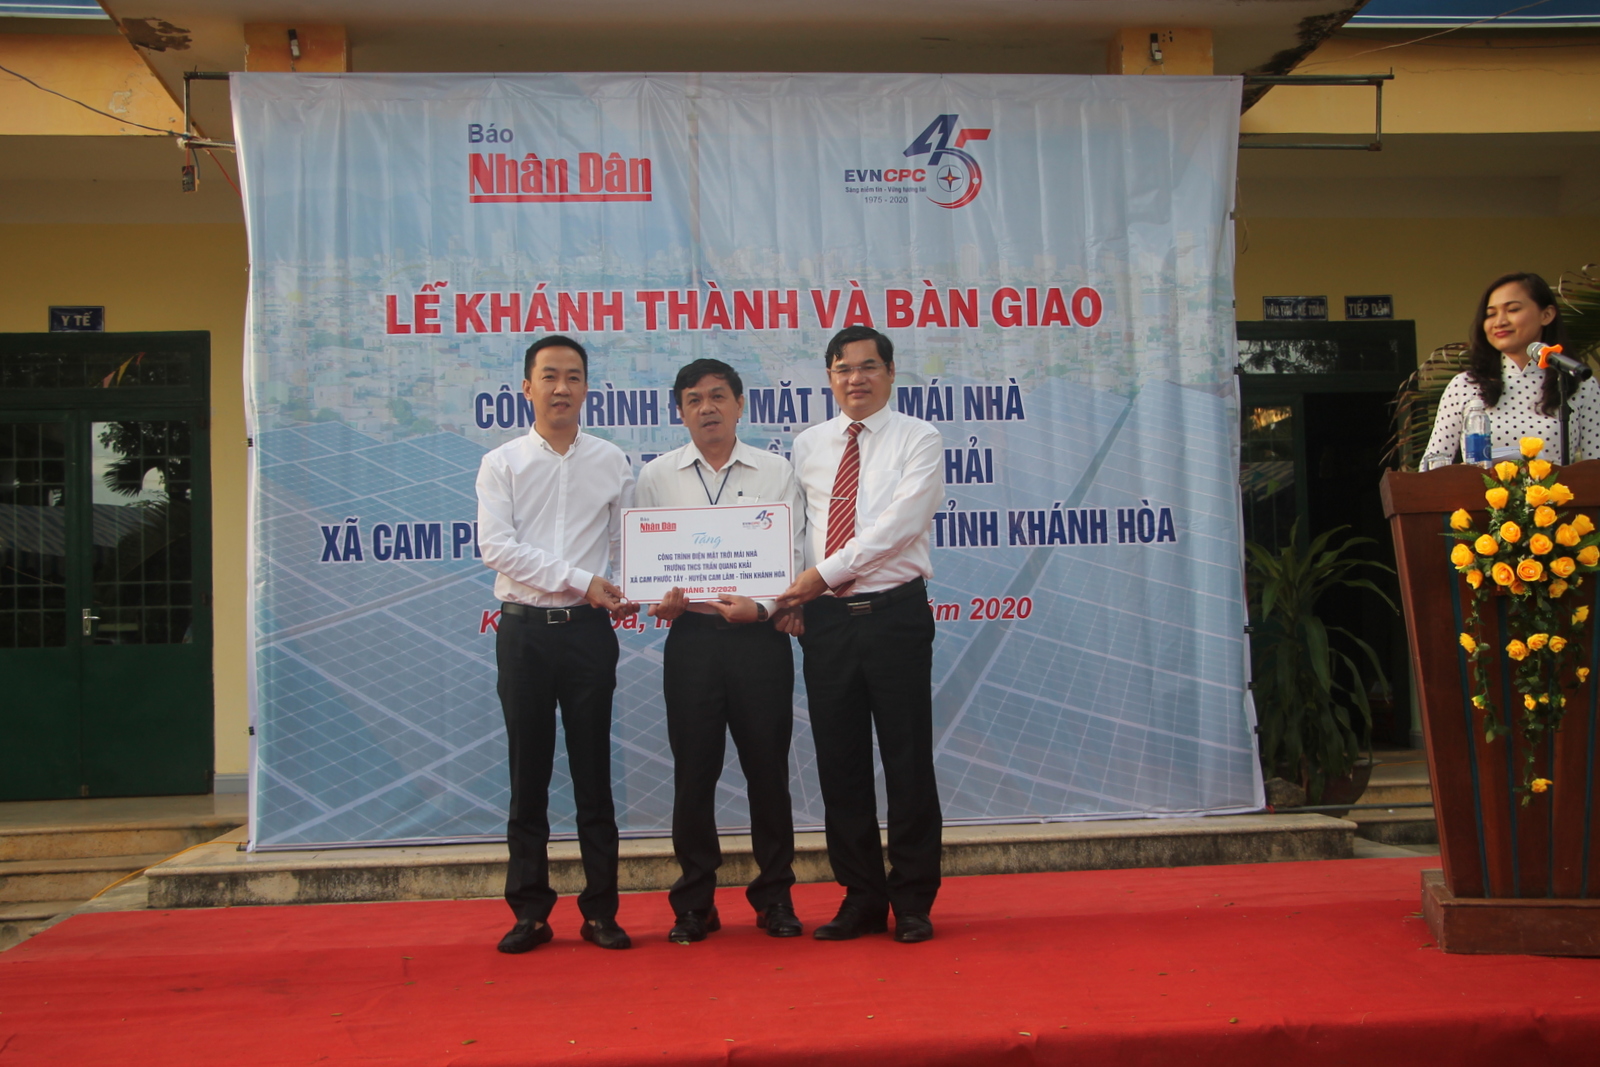 Nhà tài trợ trao tặng bảng tượng trưng công trình điện mặt trời mái nhà cho Trường Trung học cơ sở Trần Quang Khải.